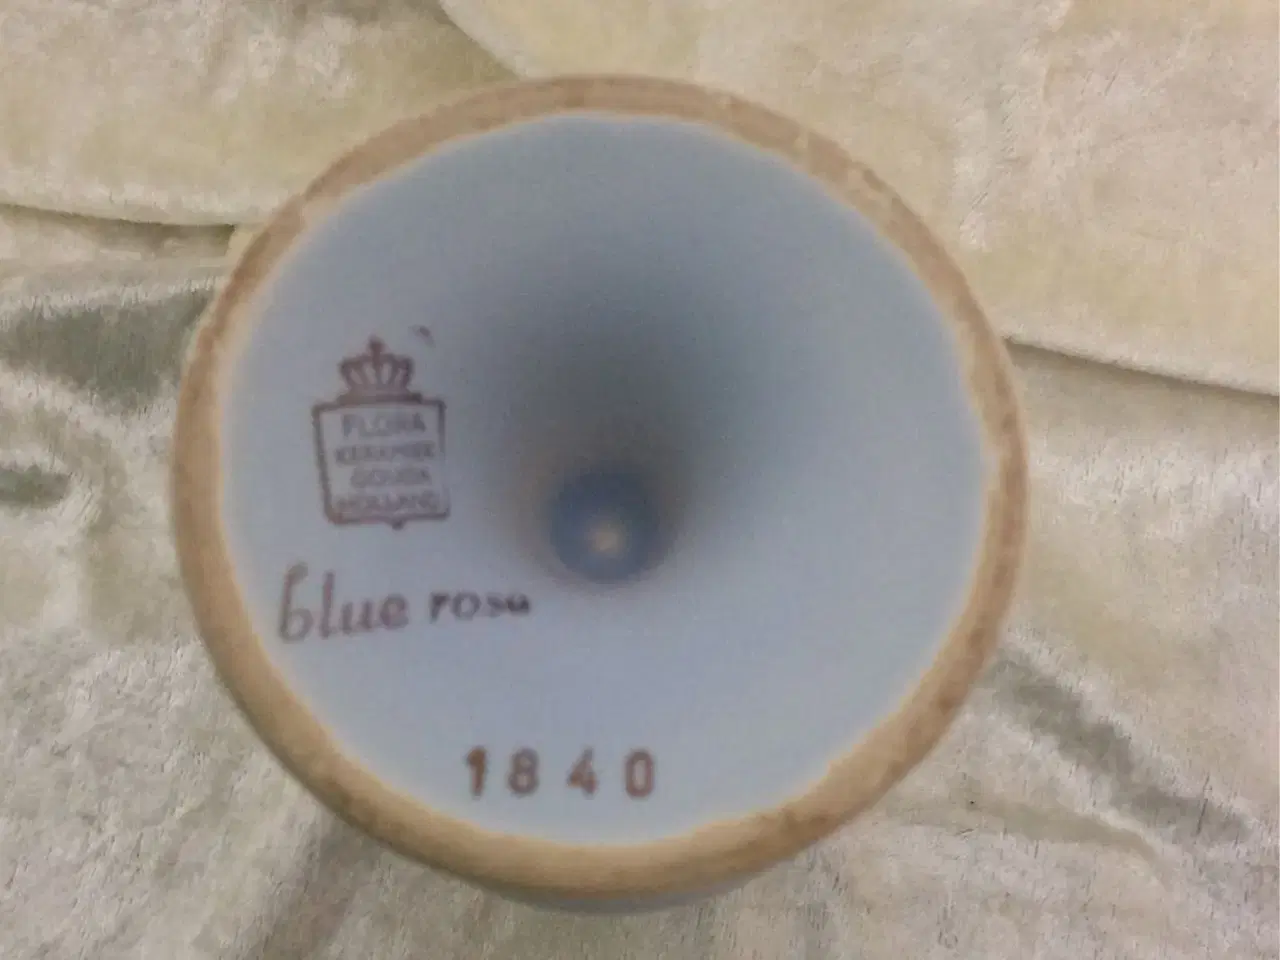 Billede 2 - Vase Blue rose nr 1840